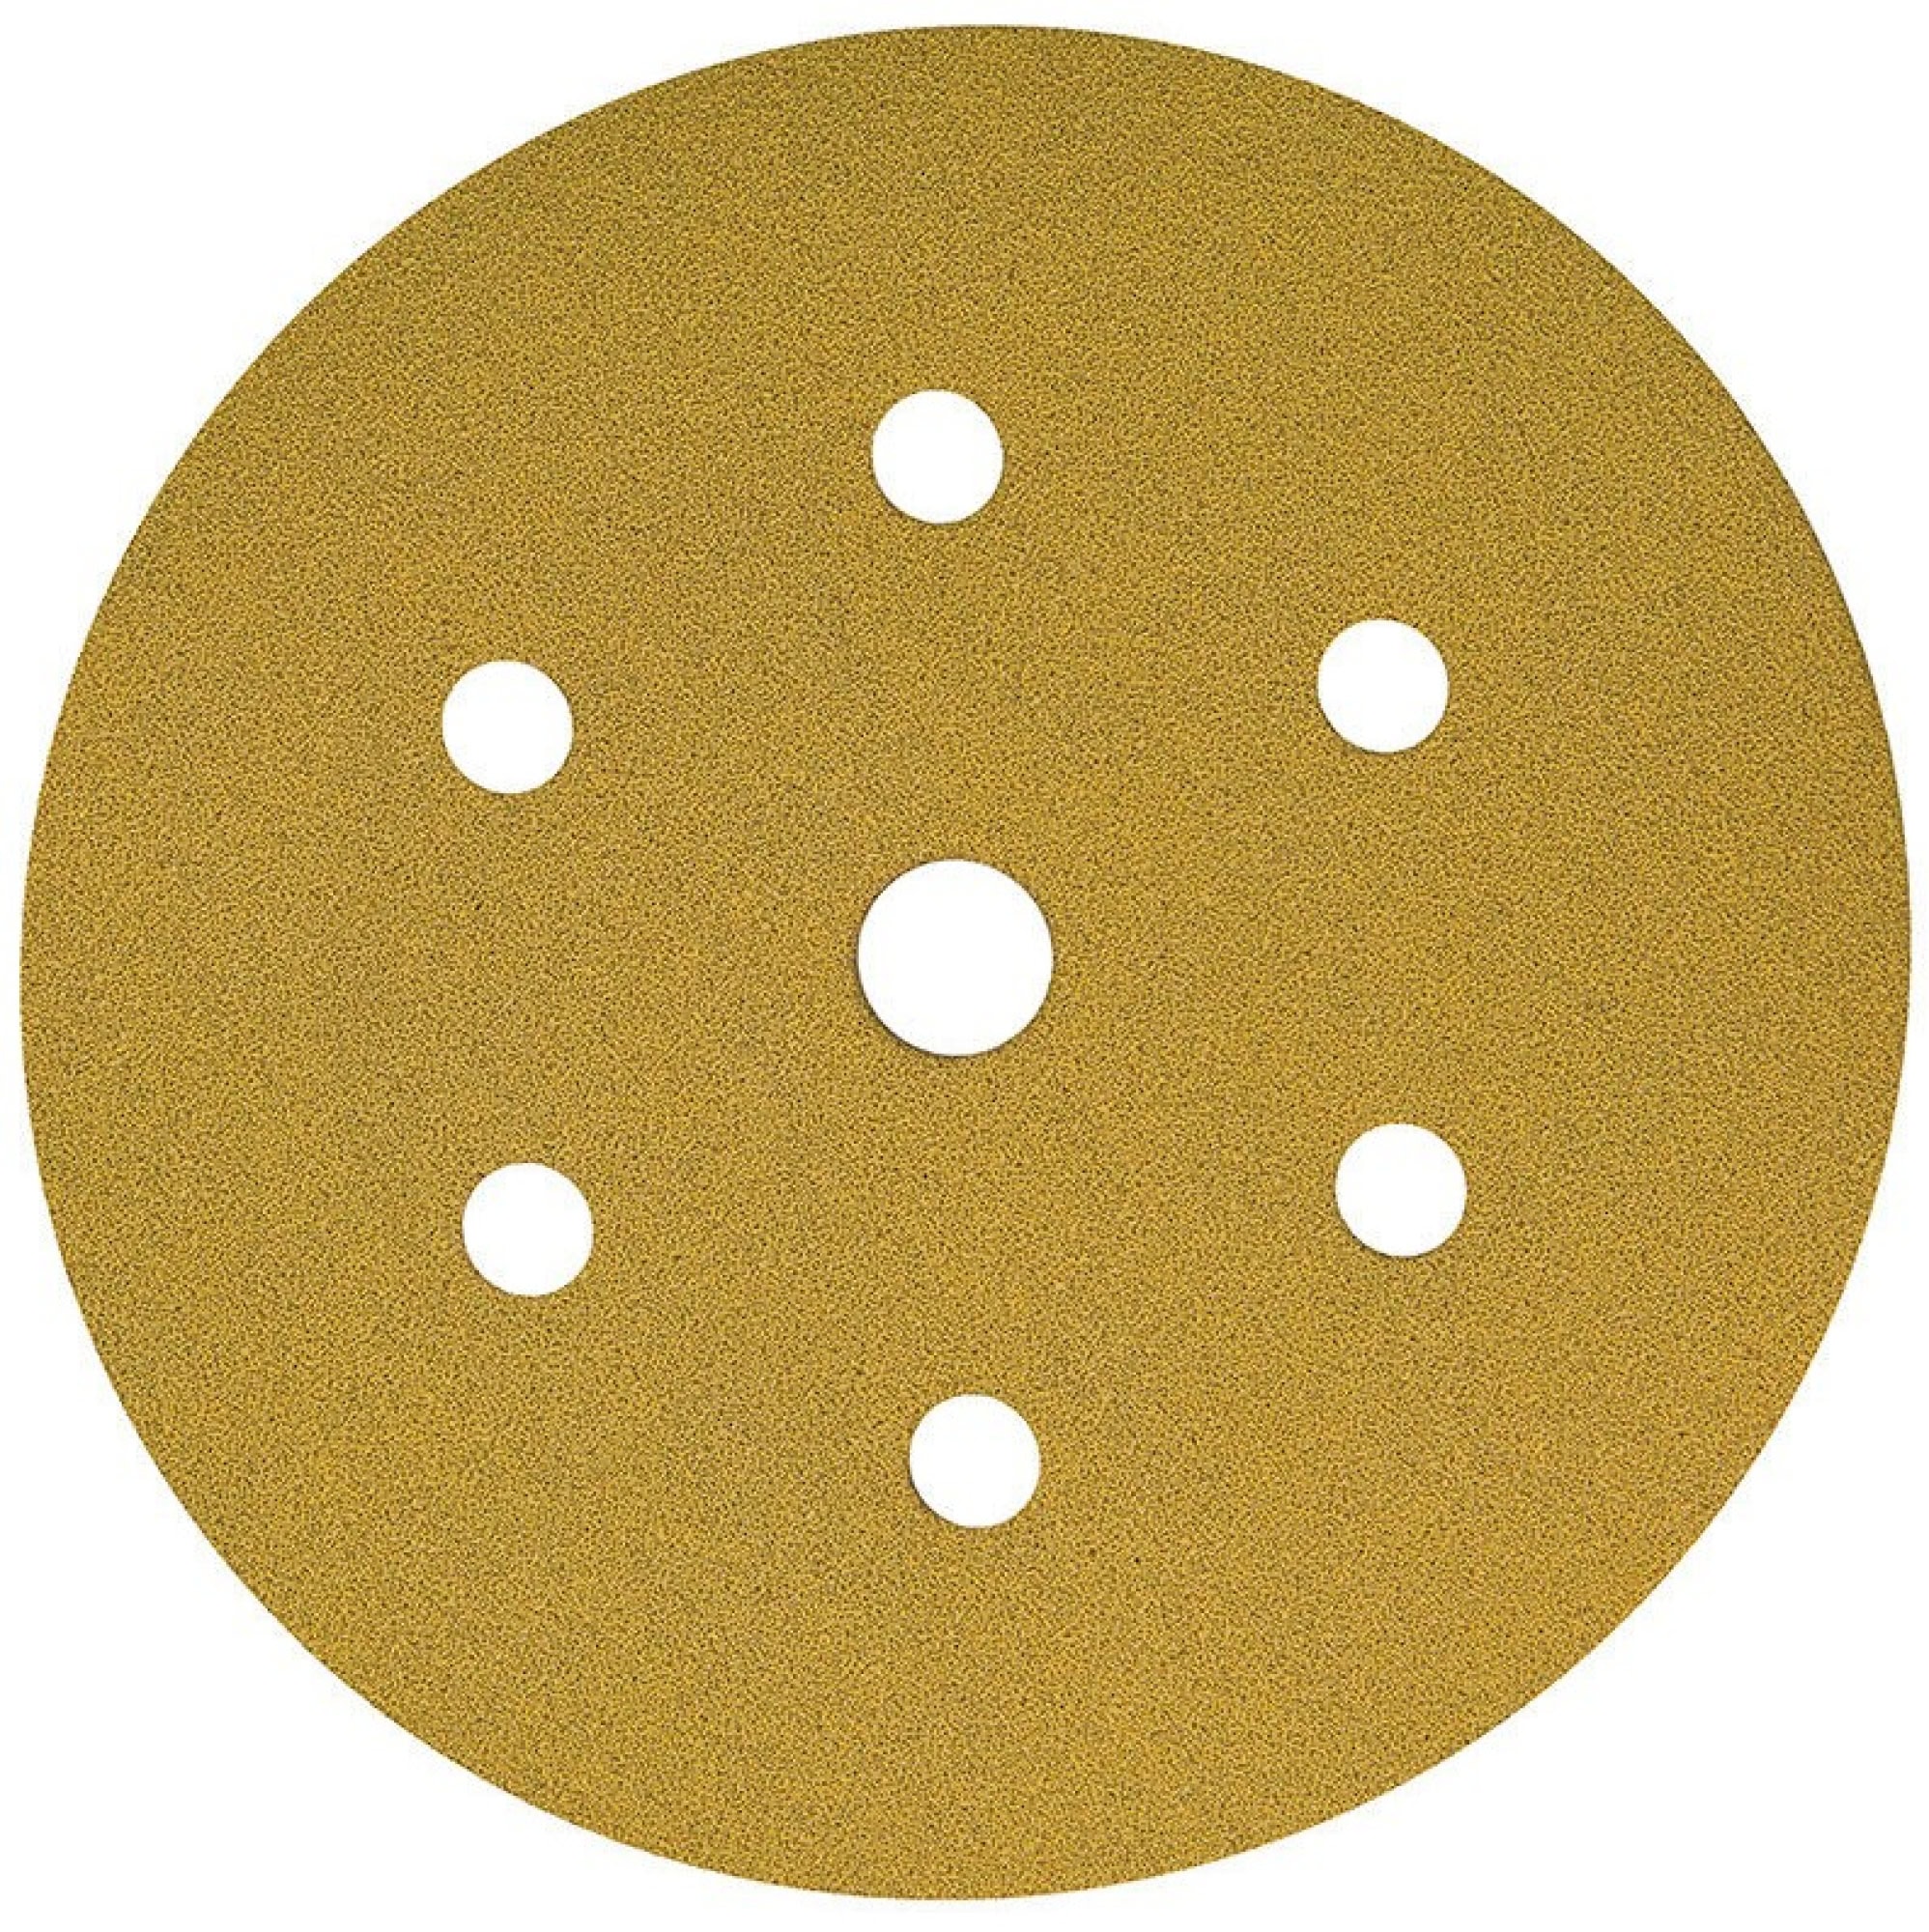 Mirka® Gold 2362809918, Ø 150 mm, P180, 7-fach gelocht, Kletthaftend, Schleifscheibe mit Aluminiumkorn